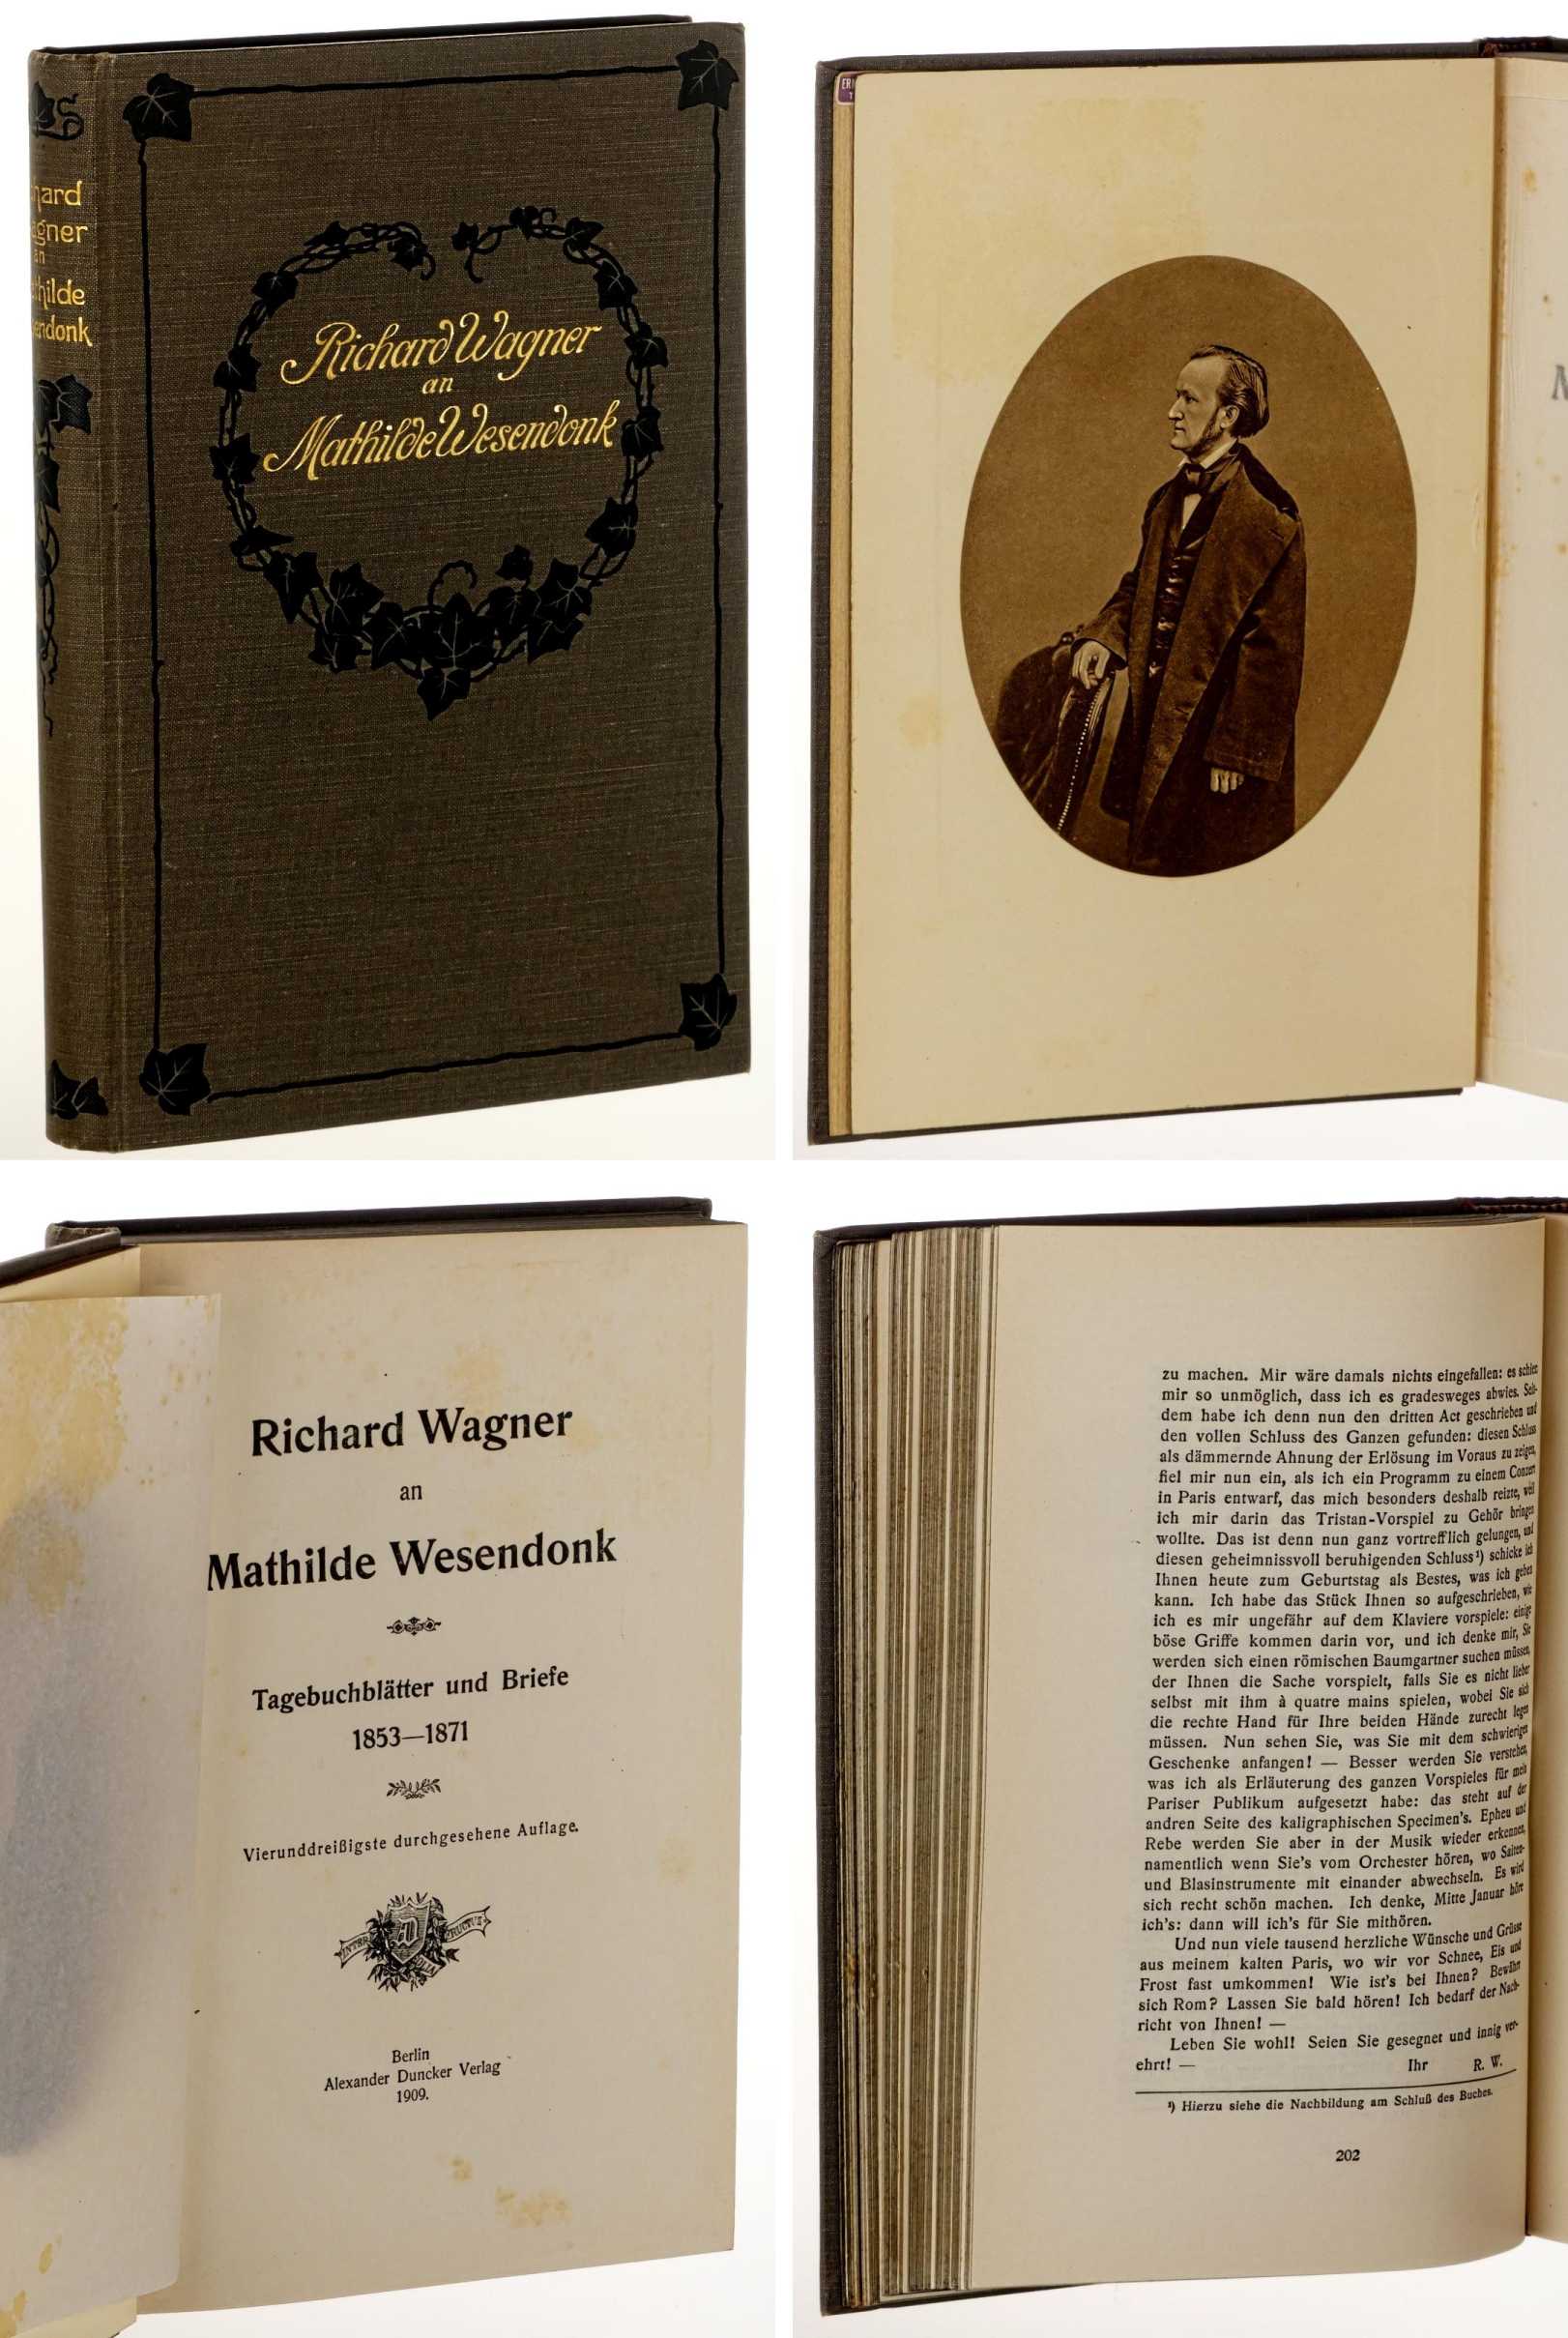   Richard Wagner an Mathilde Wesendonk. Tagebuchblätter und Briefe 1853-1871. 